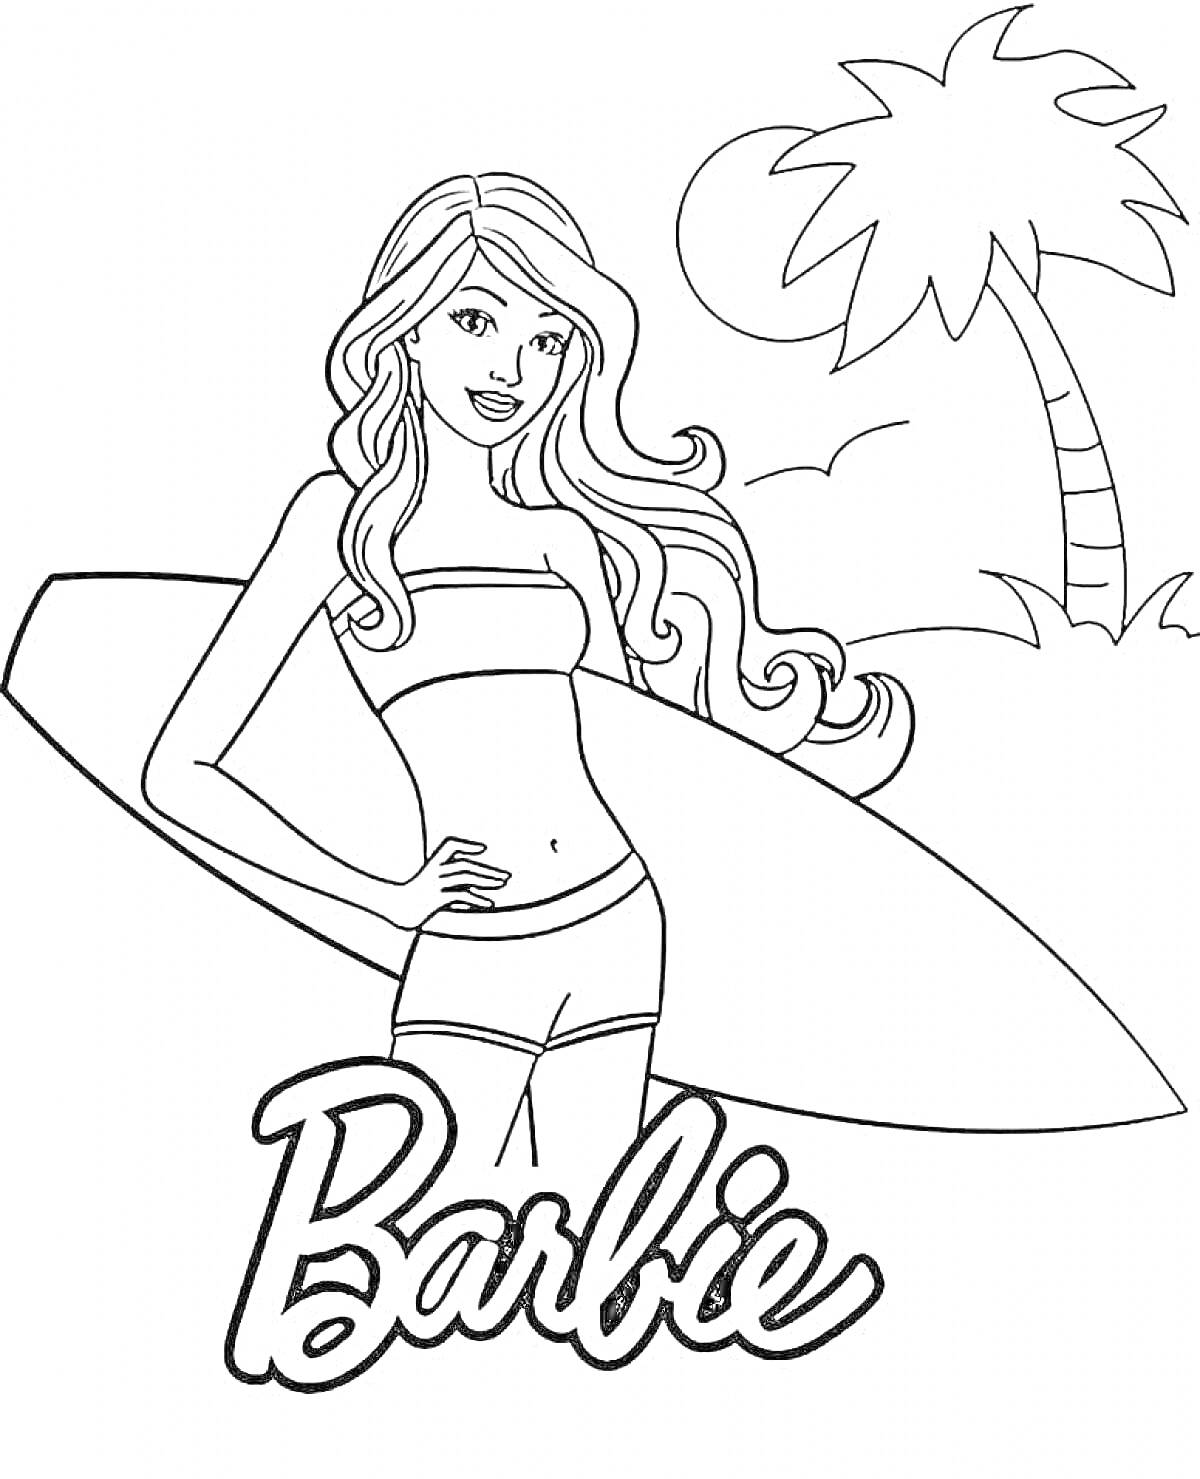 Раскраска Барби с серфбордом возле пальмы на фоне солнца и птиц